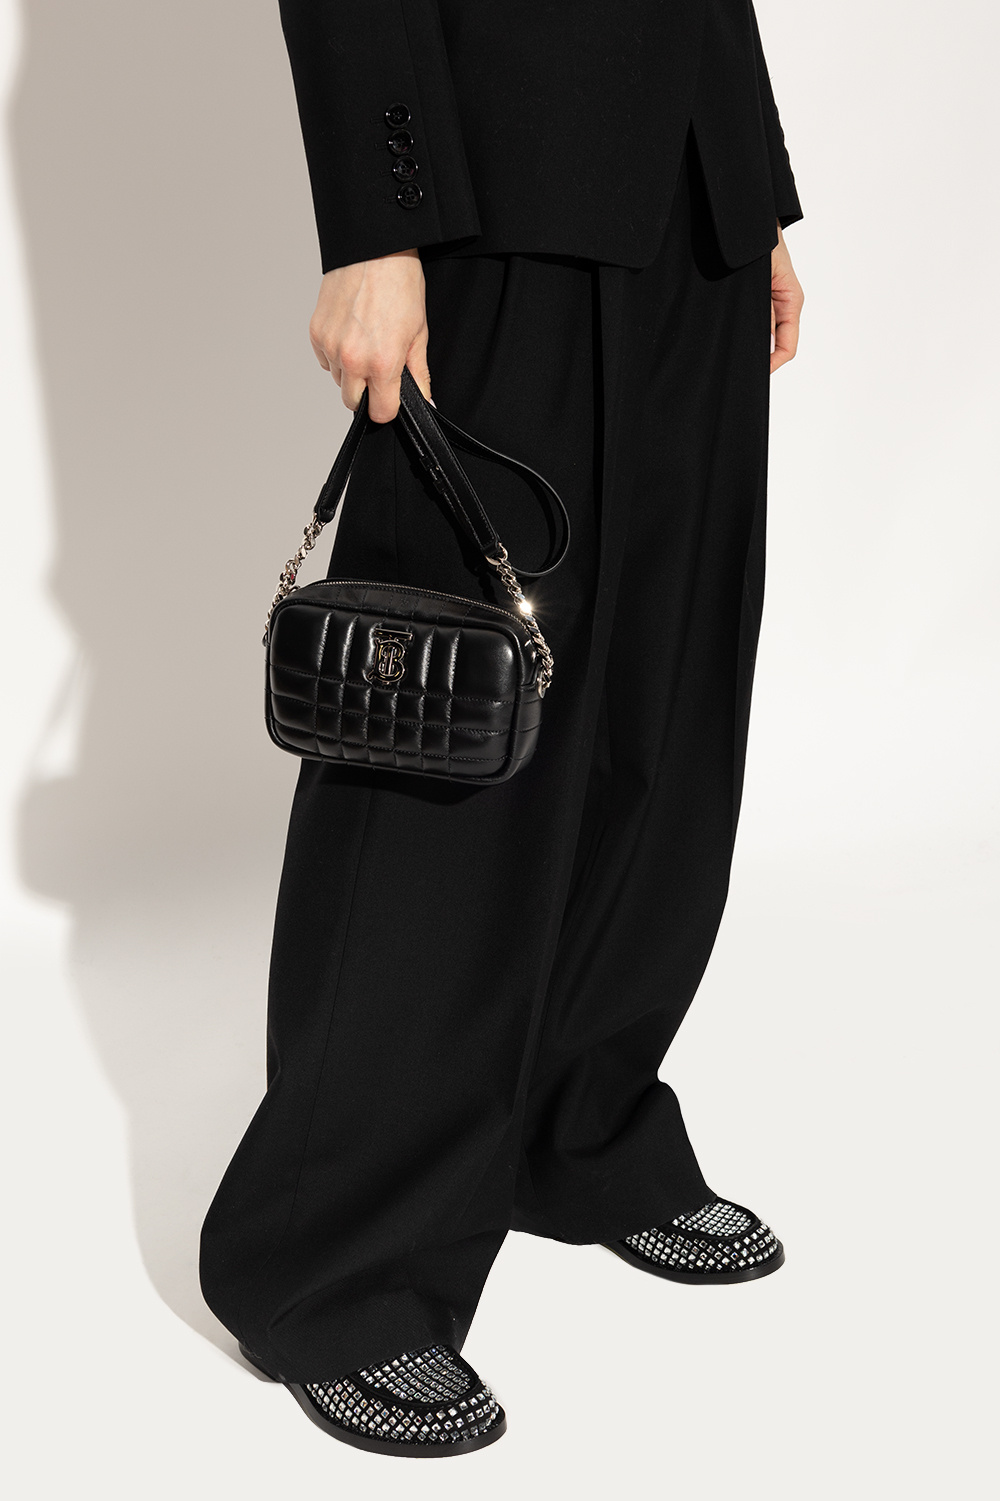 Black 'Lola Mini' shoulder bag Burberry - Vitkac TW